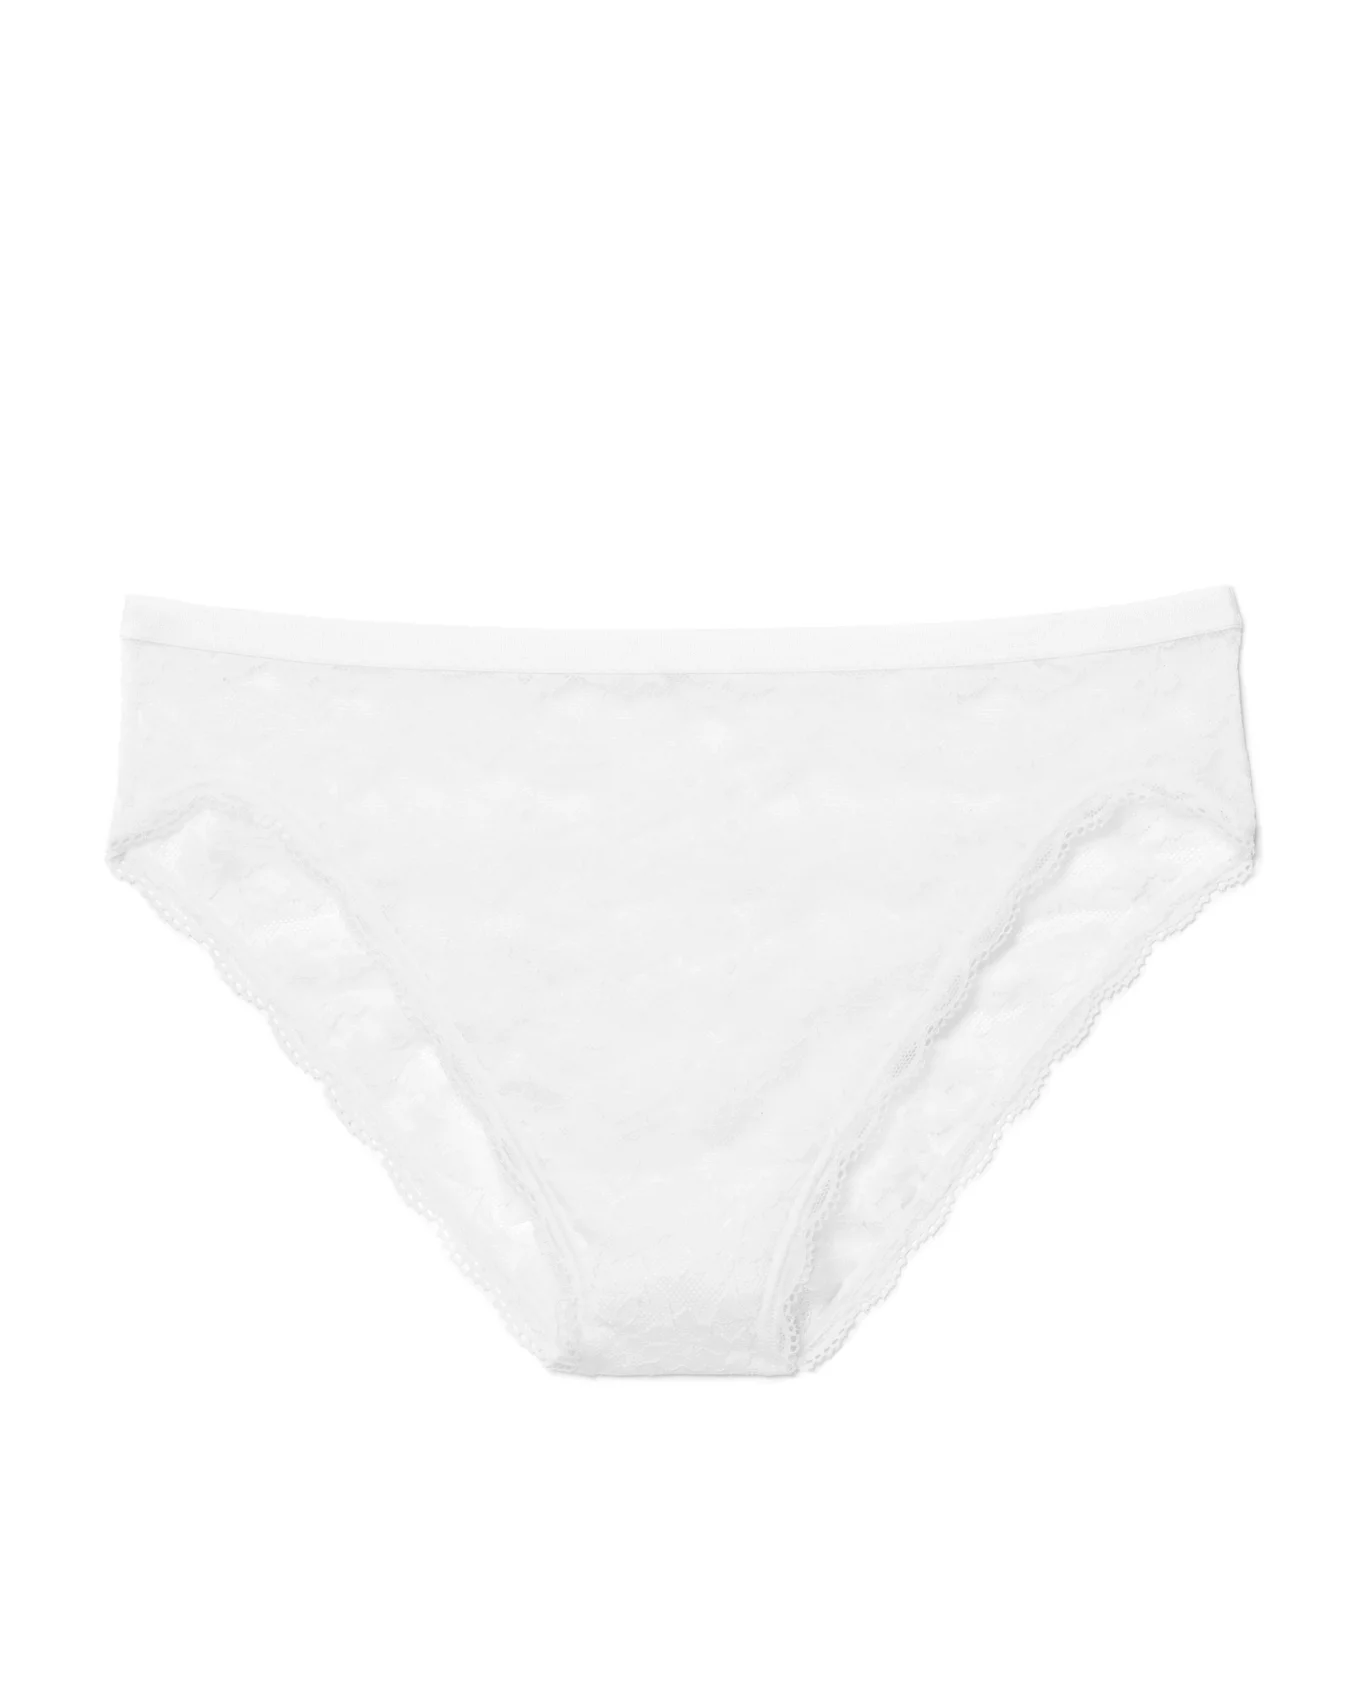 Athlecia Athletic Underwear 'Mucht' in White